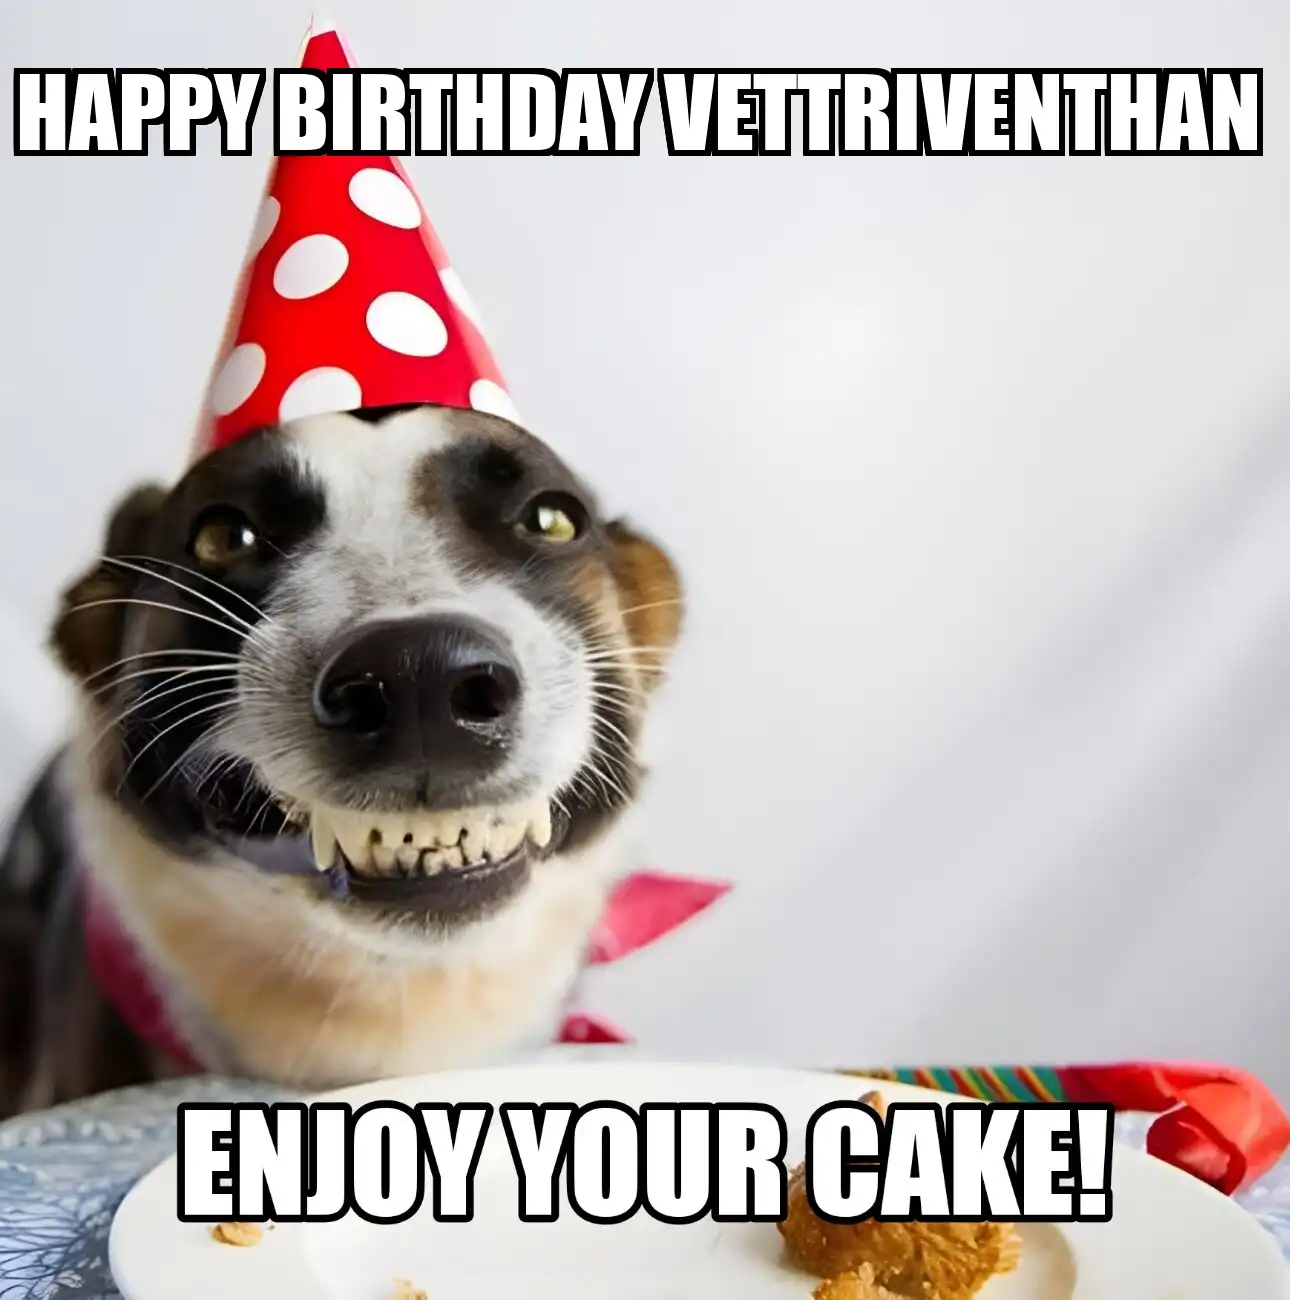 Happy Birthday Vettriventhan Enjoy Your Cake Dog Meme